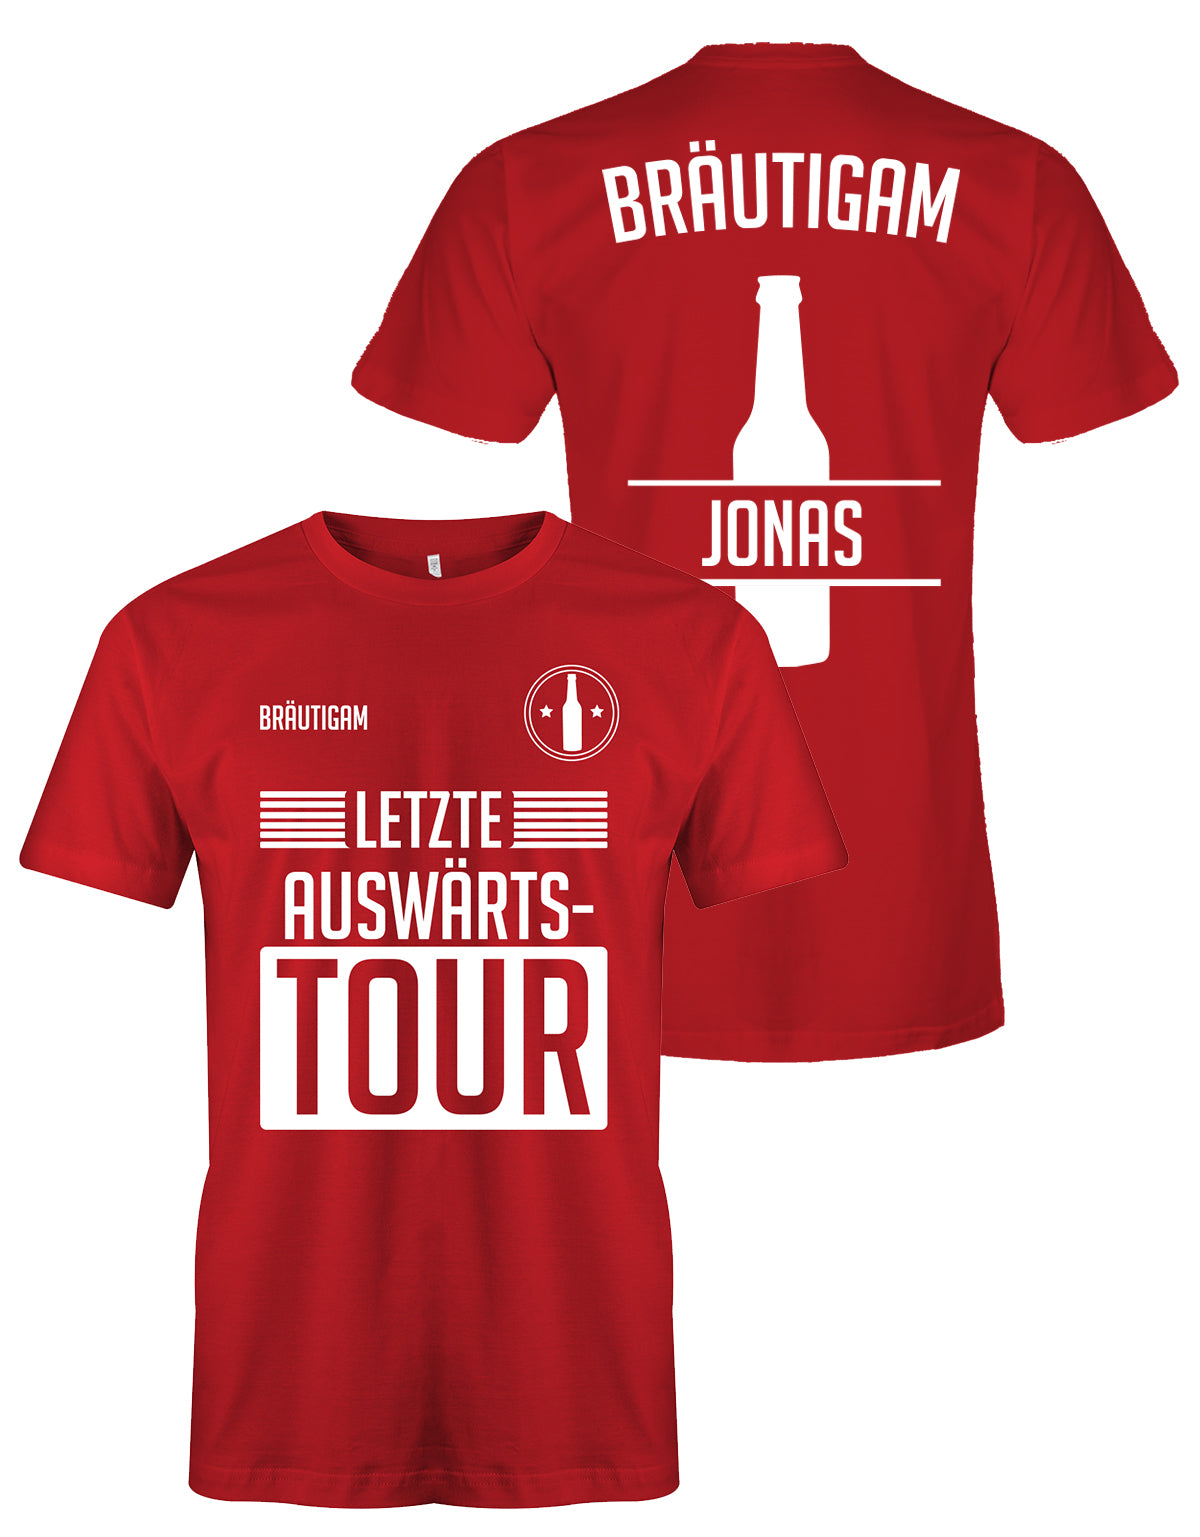 Letzte Auswärtstour JGA T Shirt - Bräutigam oder Team Bräutigam mit Namen Rot